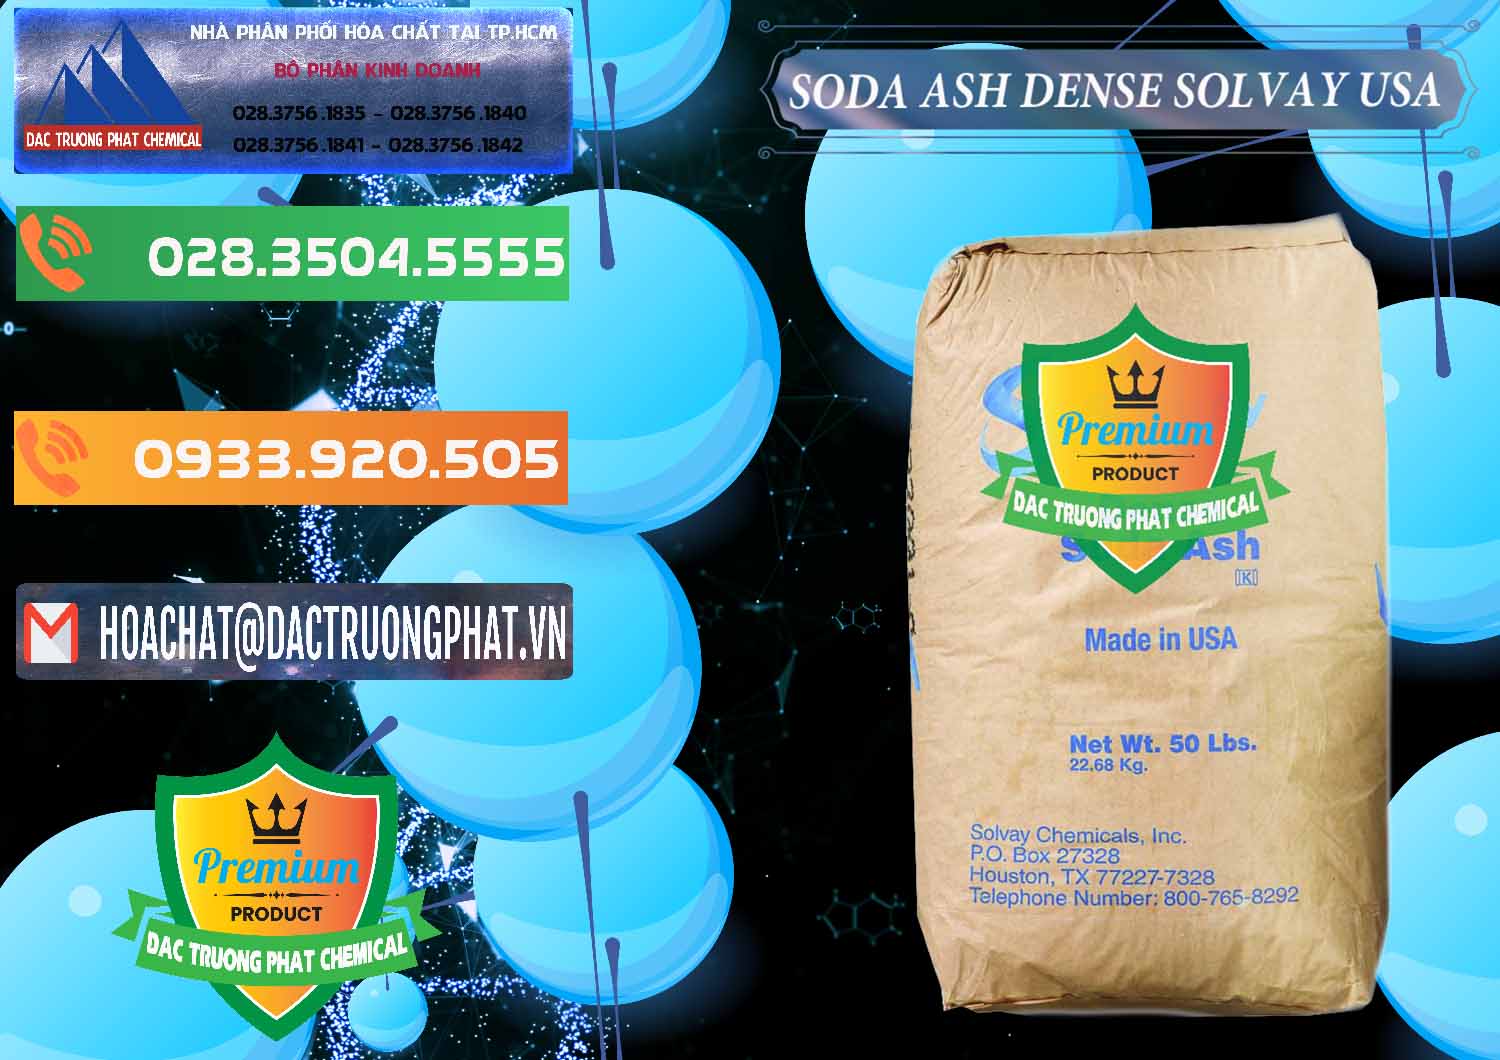 Cty bán _ cung ứng Soda Ash Dense - NA2CO3 Solvay Mỹ USA - 0337 - Cty phân phối _ cung ứng hóa chất tại TP.HCM - hoachatxulynuoc.com.vn